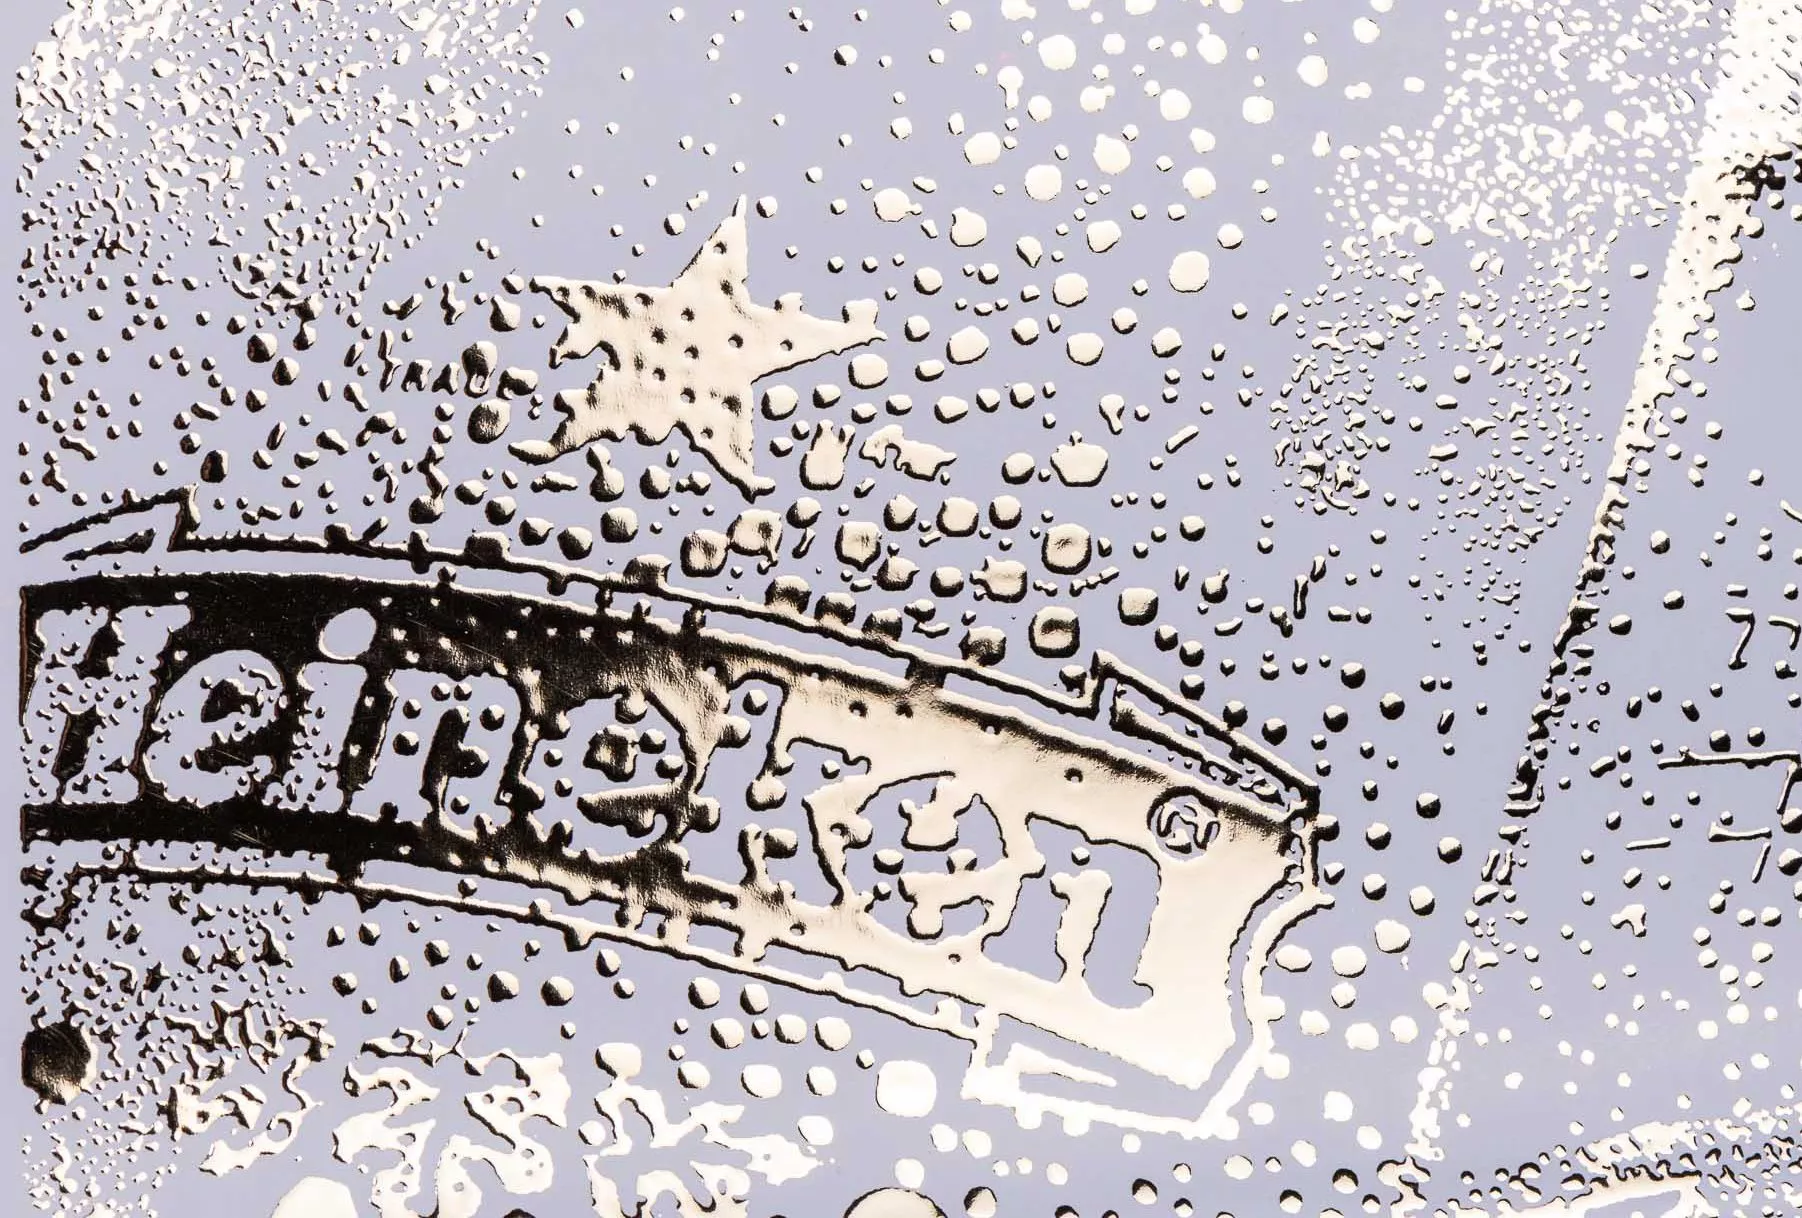 הדפסת תוויות בירה לחברת היינקן בצבע כסוף עם אלמנטי השבחת דפוס ייחודים כגון הבלטה, לכה סלקטיבית, הטבעה בחום ופויל שנותנים לבקבוק מראה קפוא. היינקן היא מבשלת בירה בהולנד שיש לה 130 מבשלות בירה בעולם